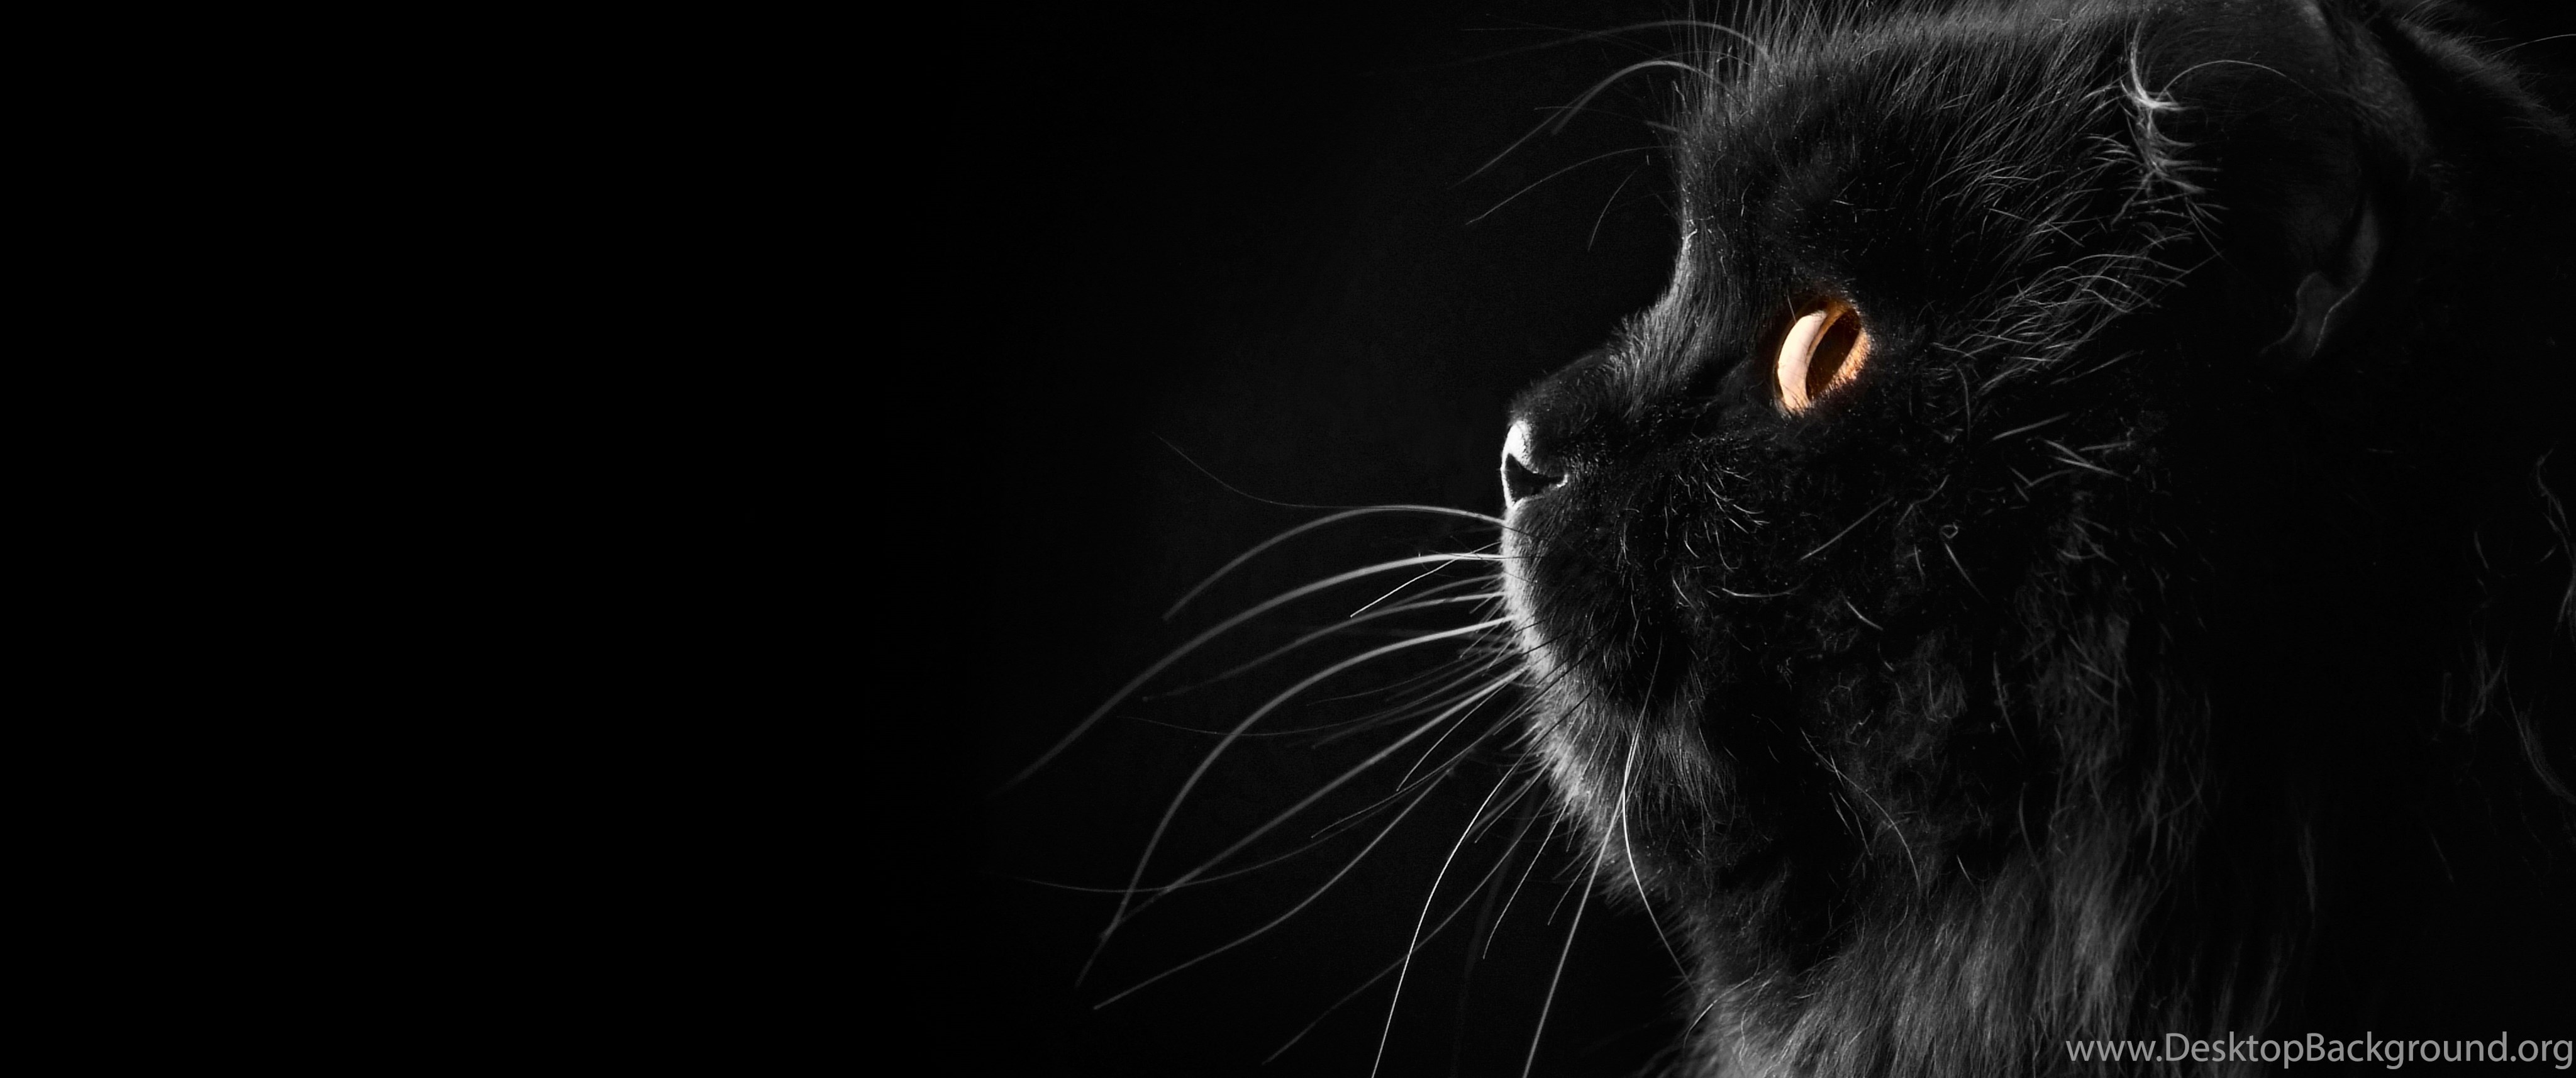 Черно белая обложка для вк. Темные обои. Кошка на темном фоне. Кошка на черном фоне. Черный кот на черном фоне.